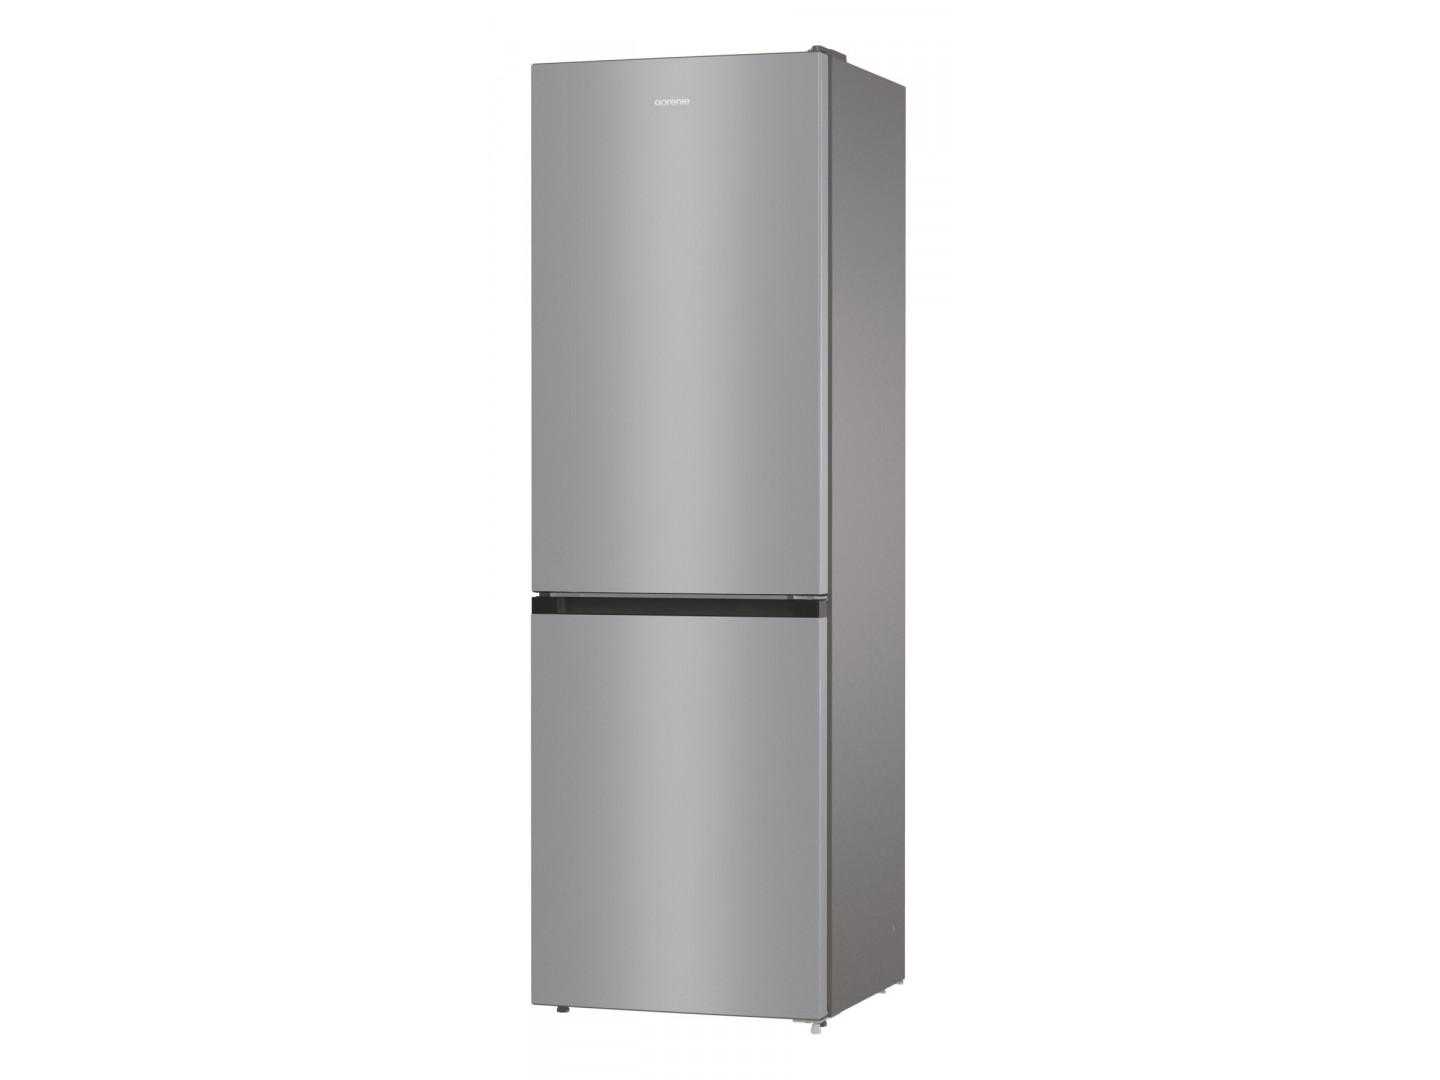 7 лучших холодильников beko - рейтинг 2021